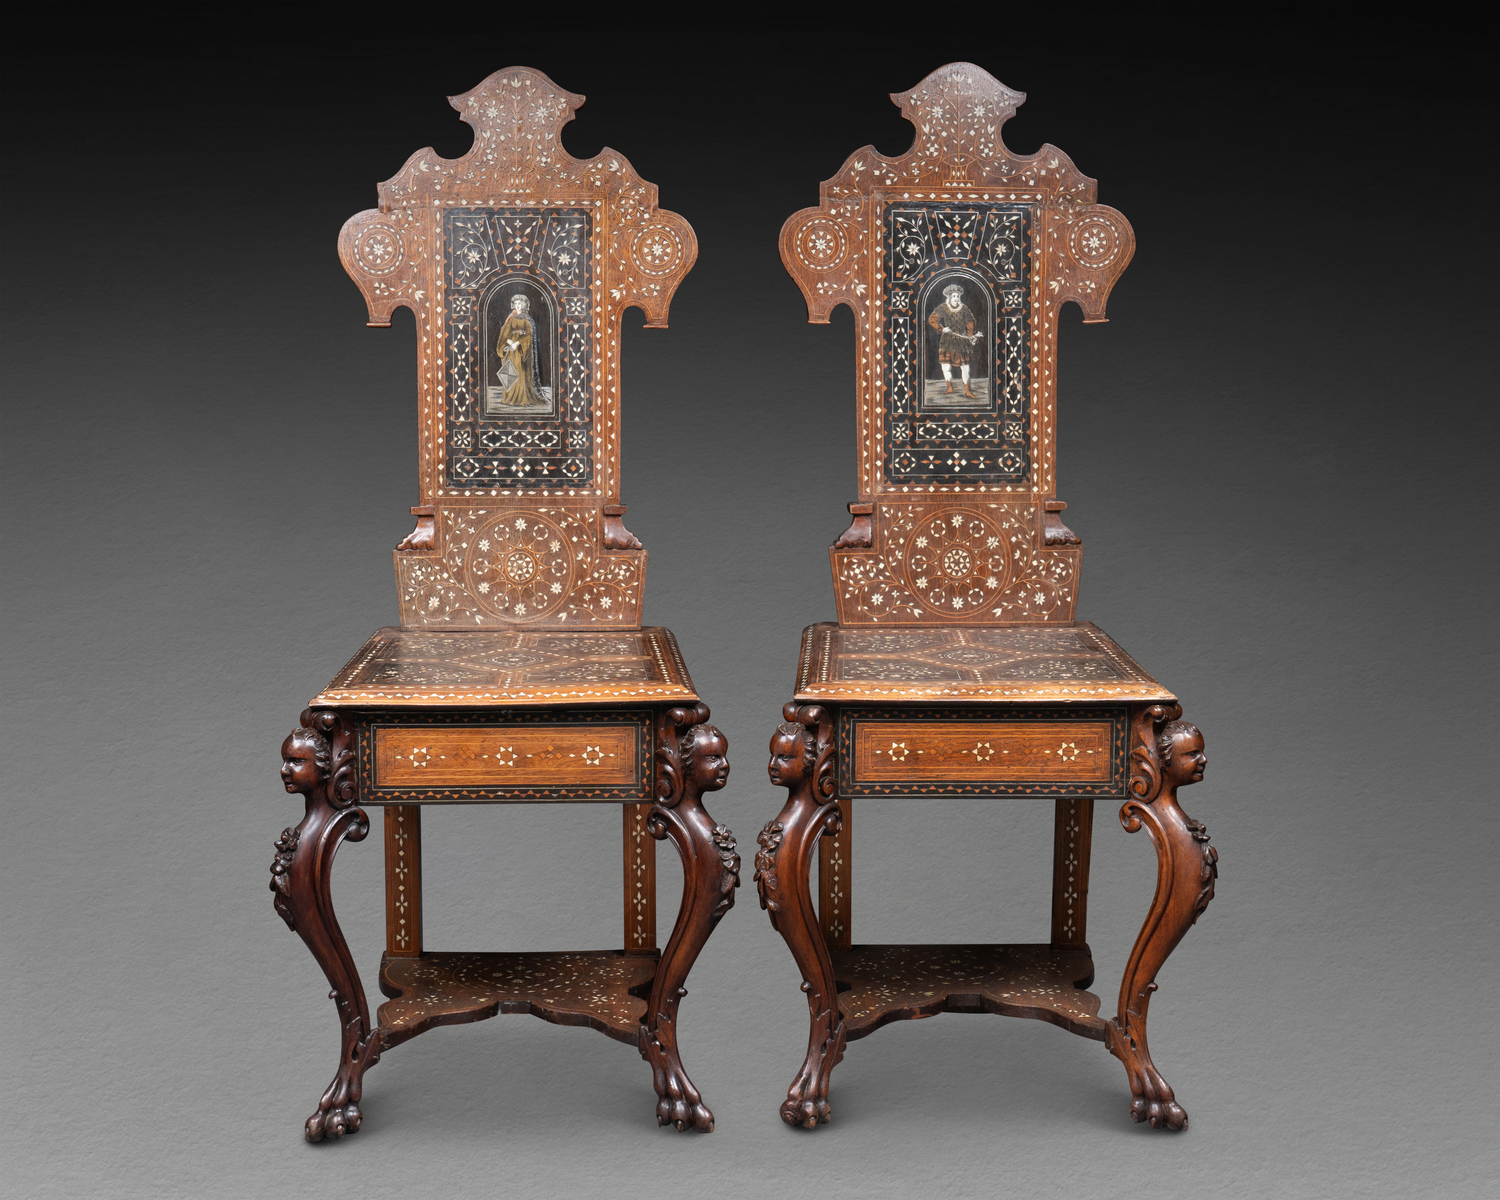 Paire de chaises vénitiennes marquetées, début XIXe siècle